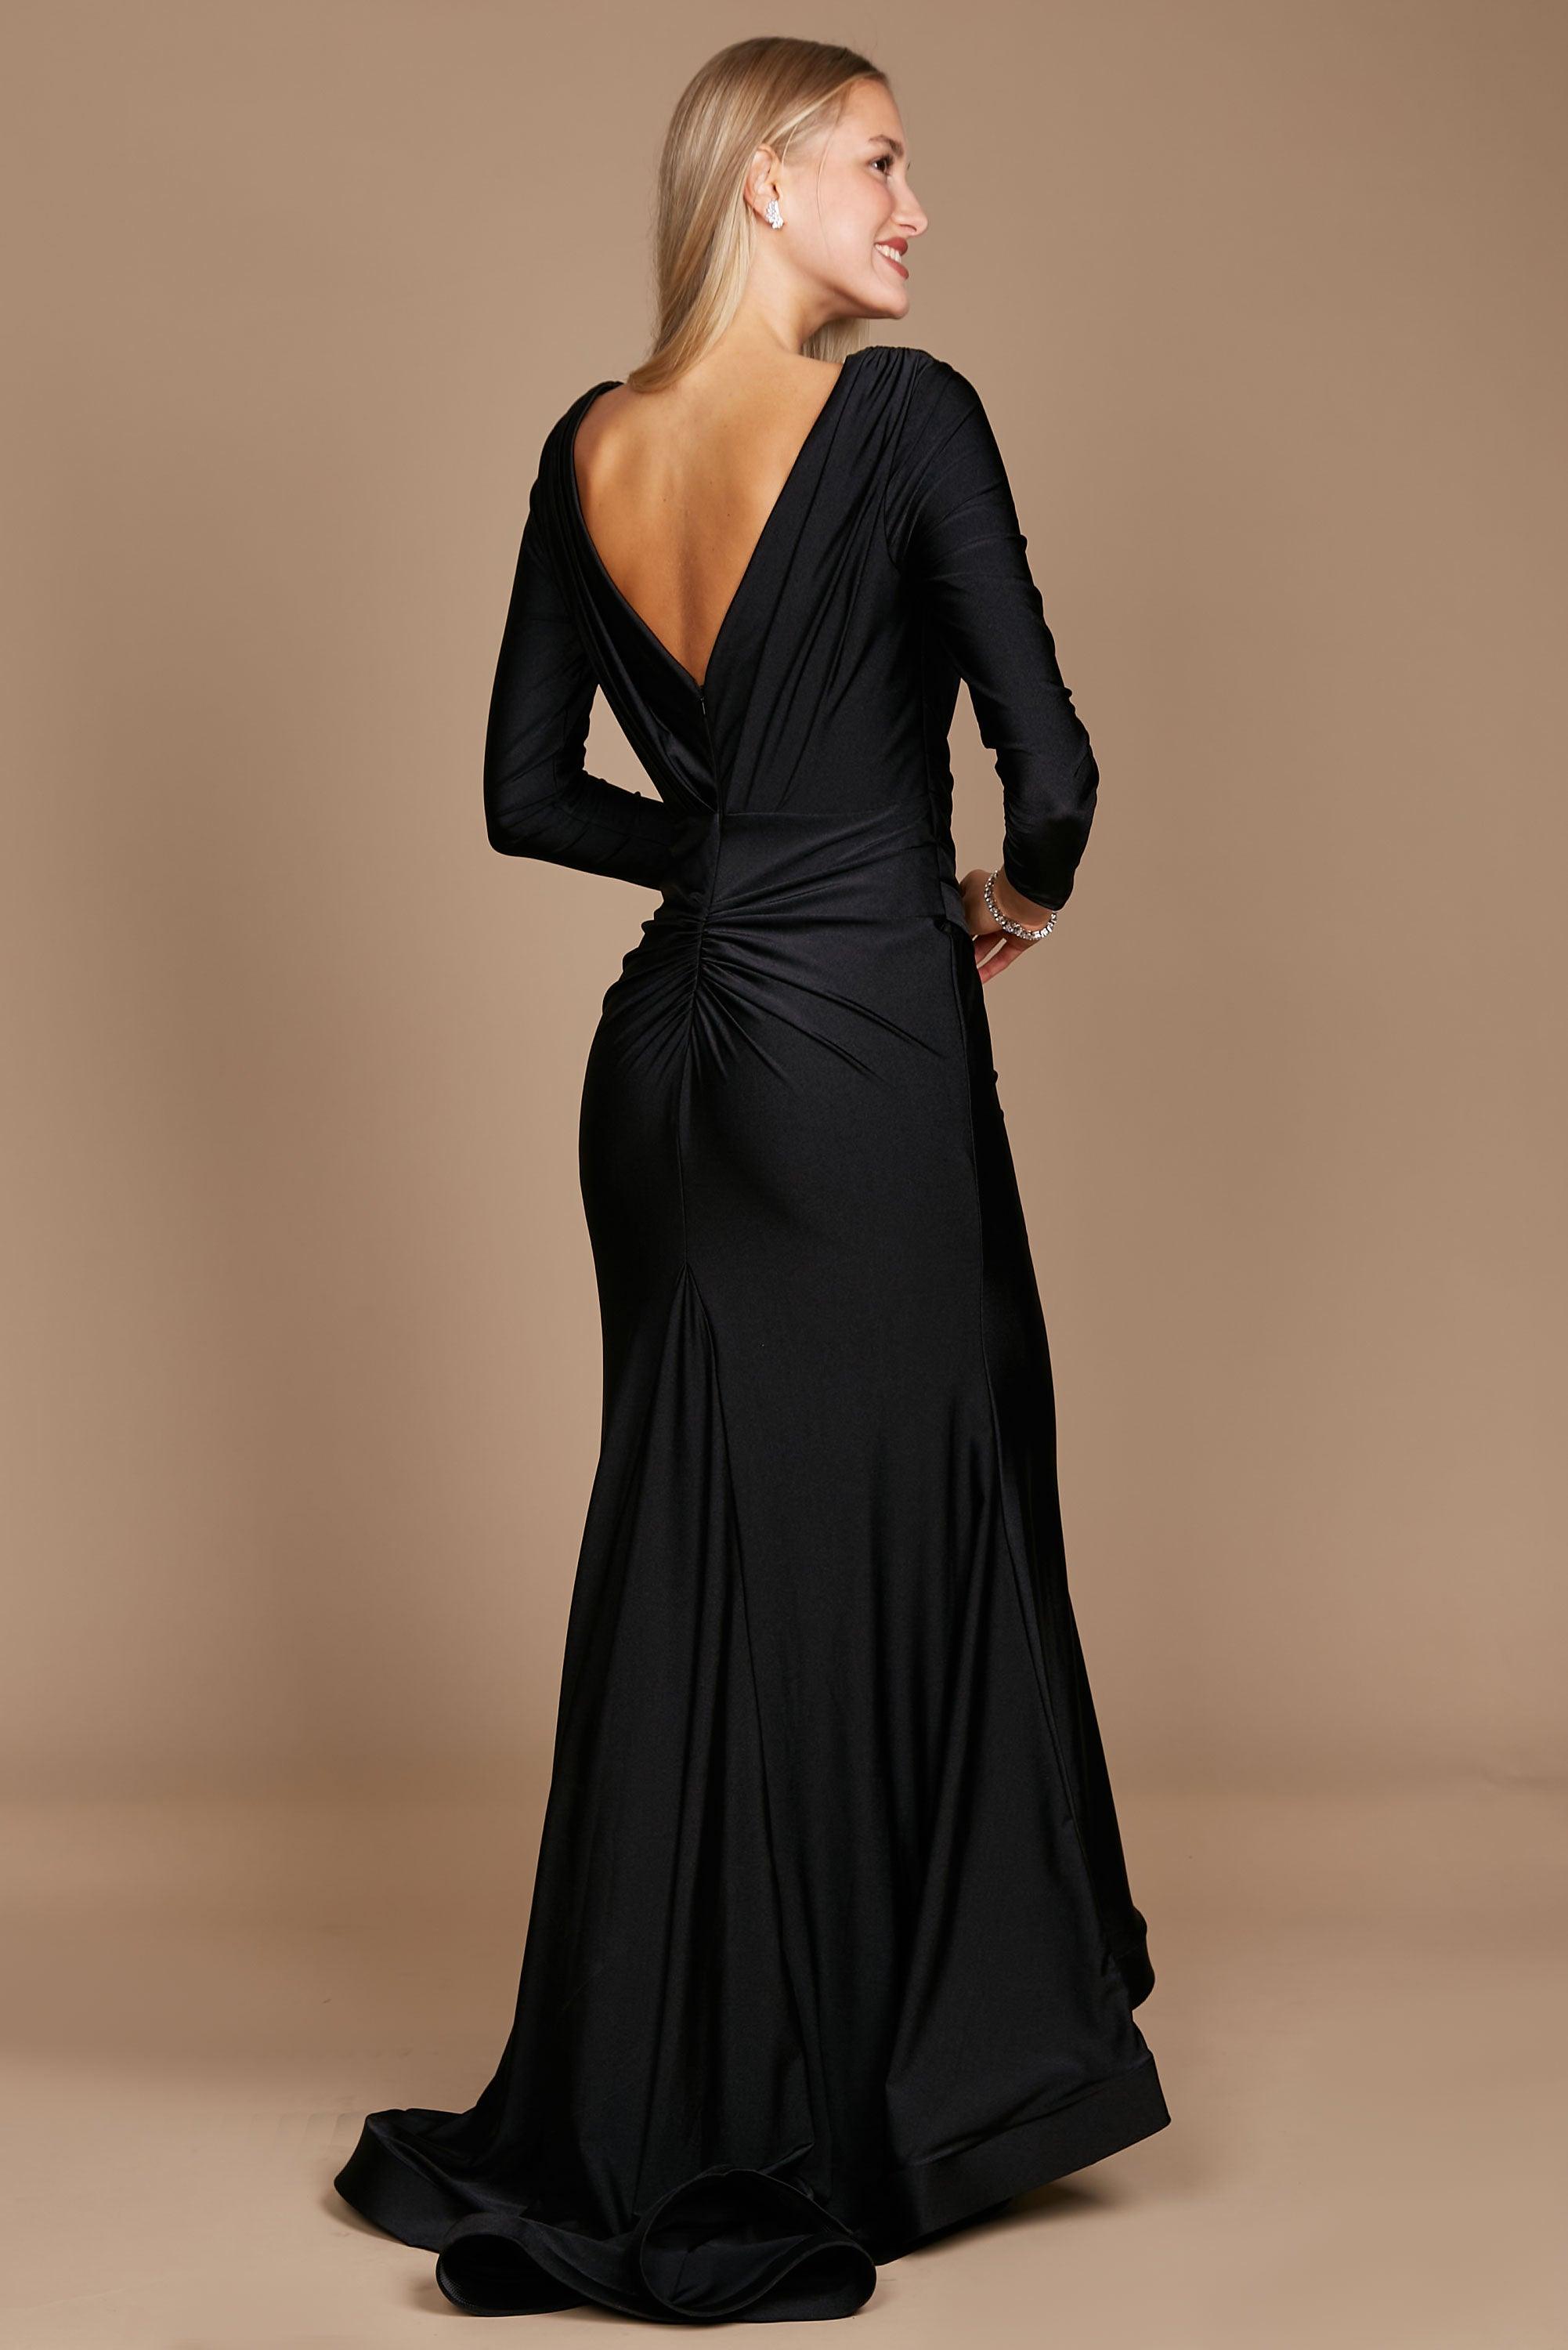 Black Evening Dresses for Women | Goddiva